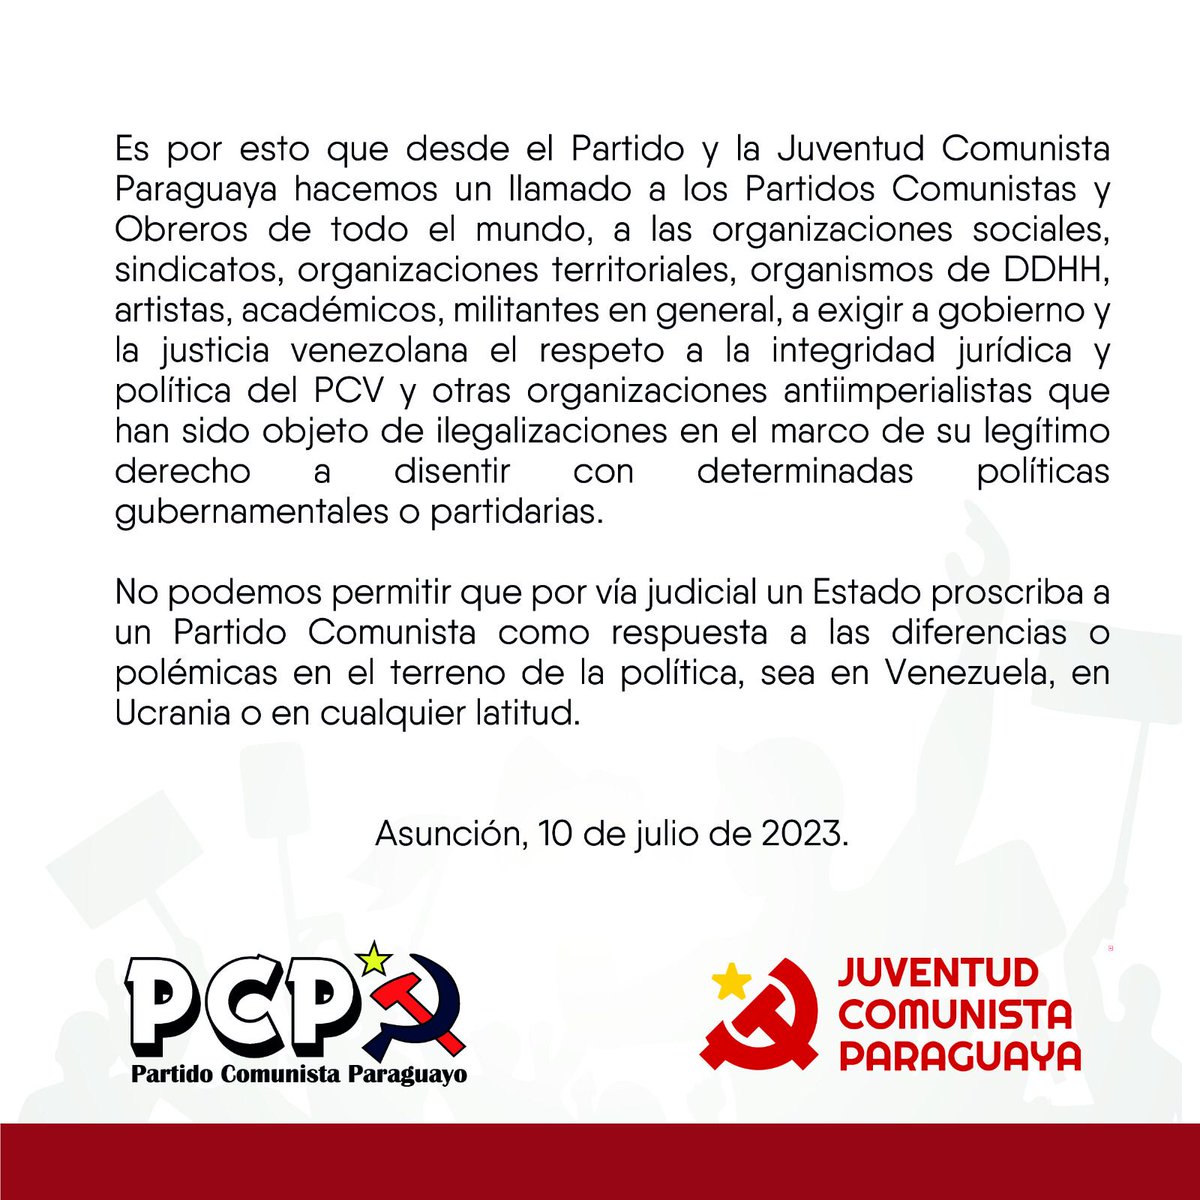 Comunicado urgente: Solidaridad contra la intervención judicial del PCV. #YoDefiendoAlPCV